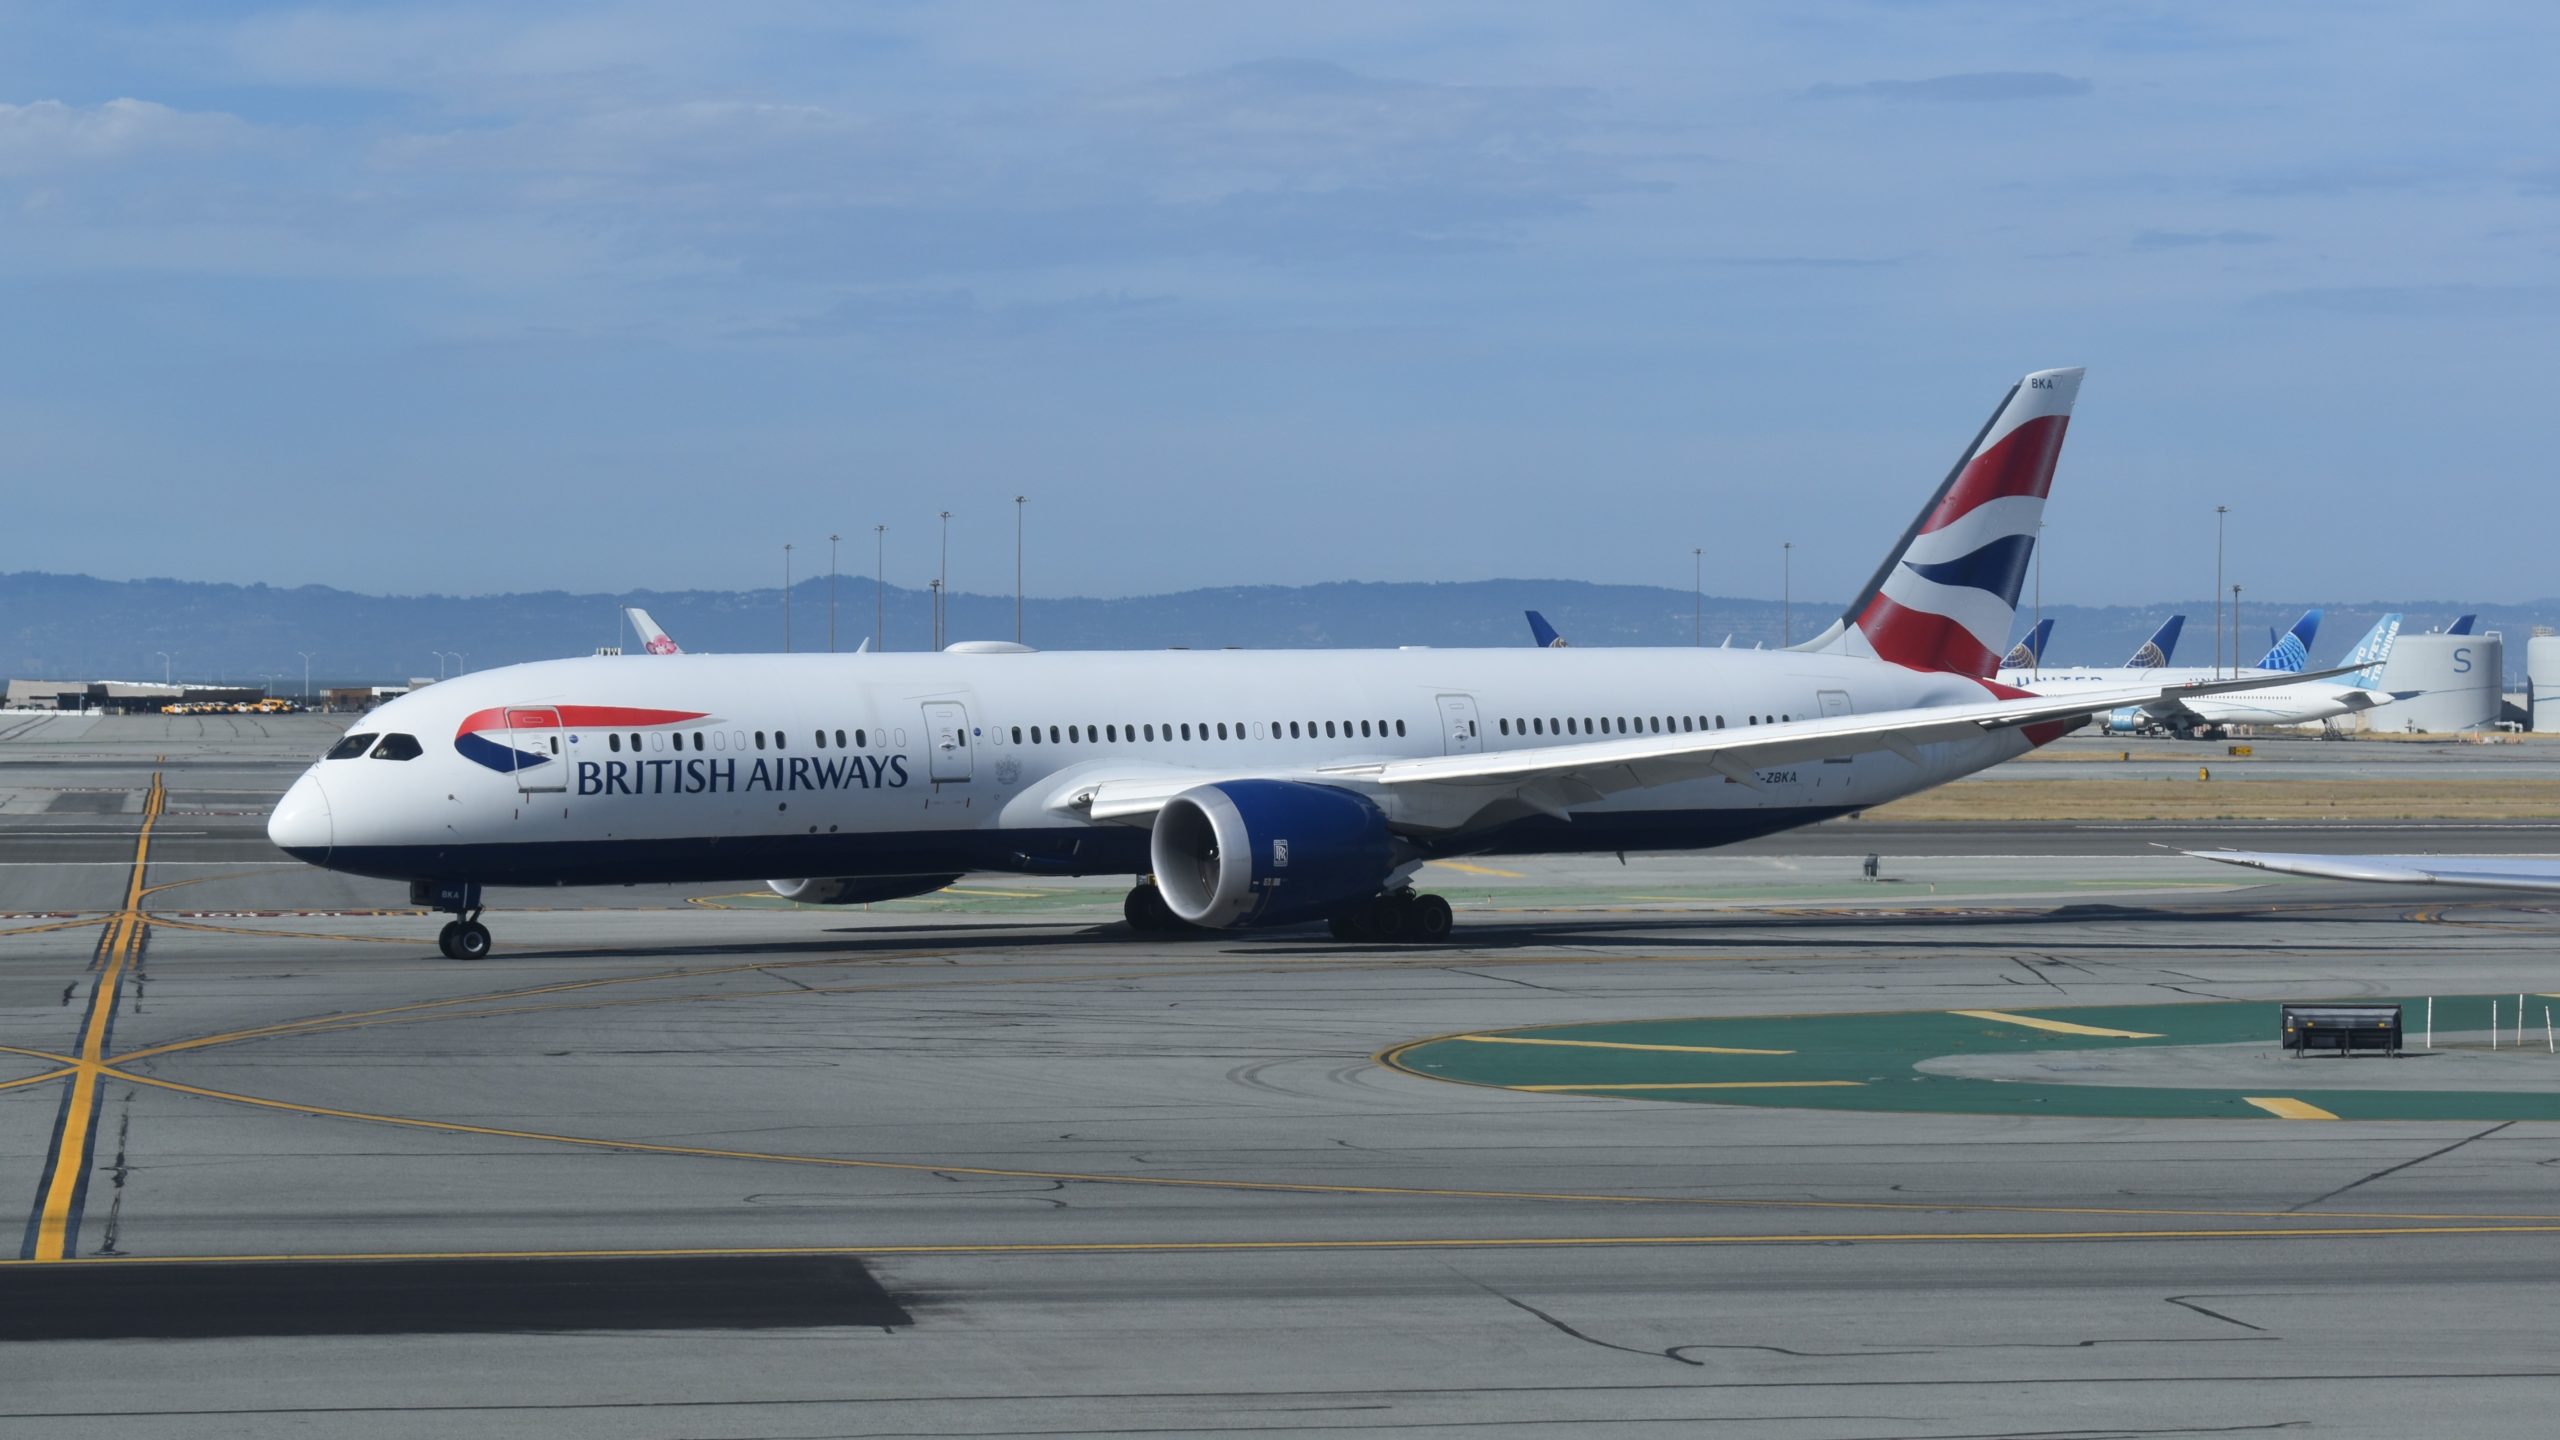 British Airways Visa 100,000 Avios Offer